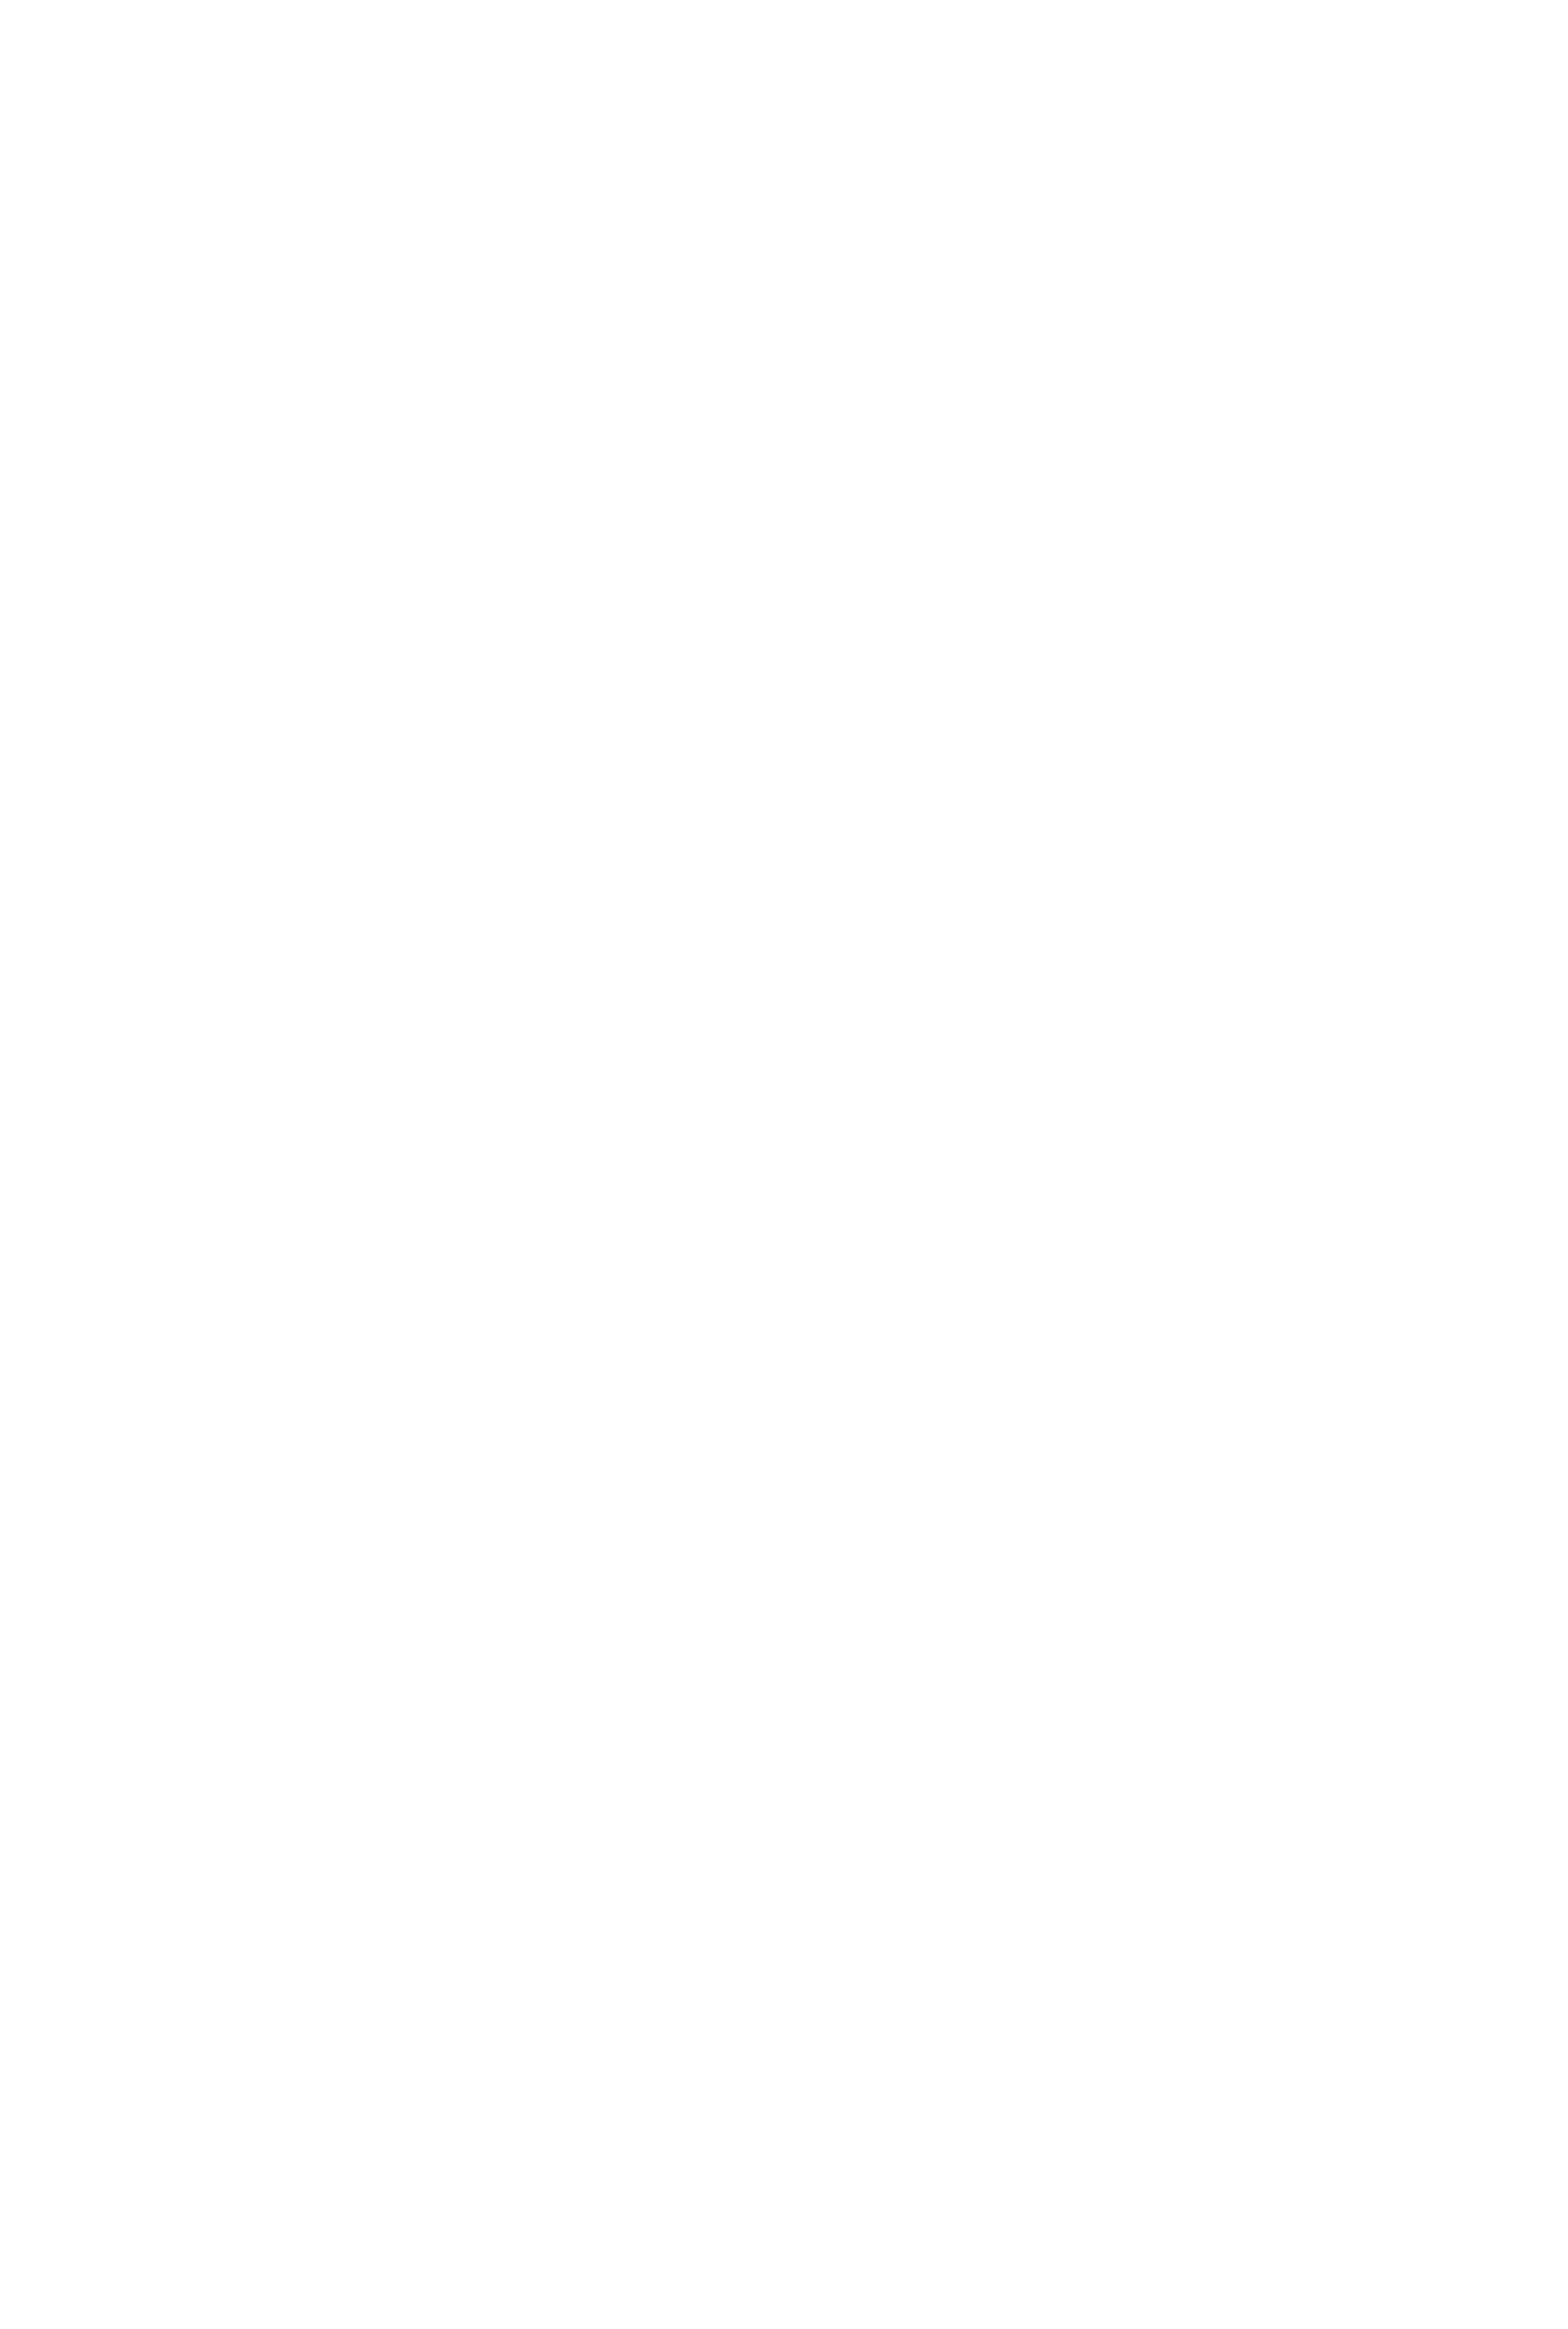 Подготовительные работы к запуску белорусского спутника на Байконуре, 2012 г. (Казахстан). Фото Роскосмос - БелТА